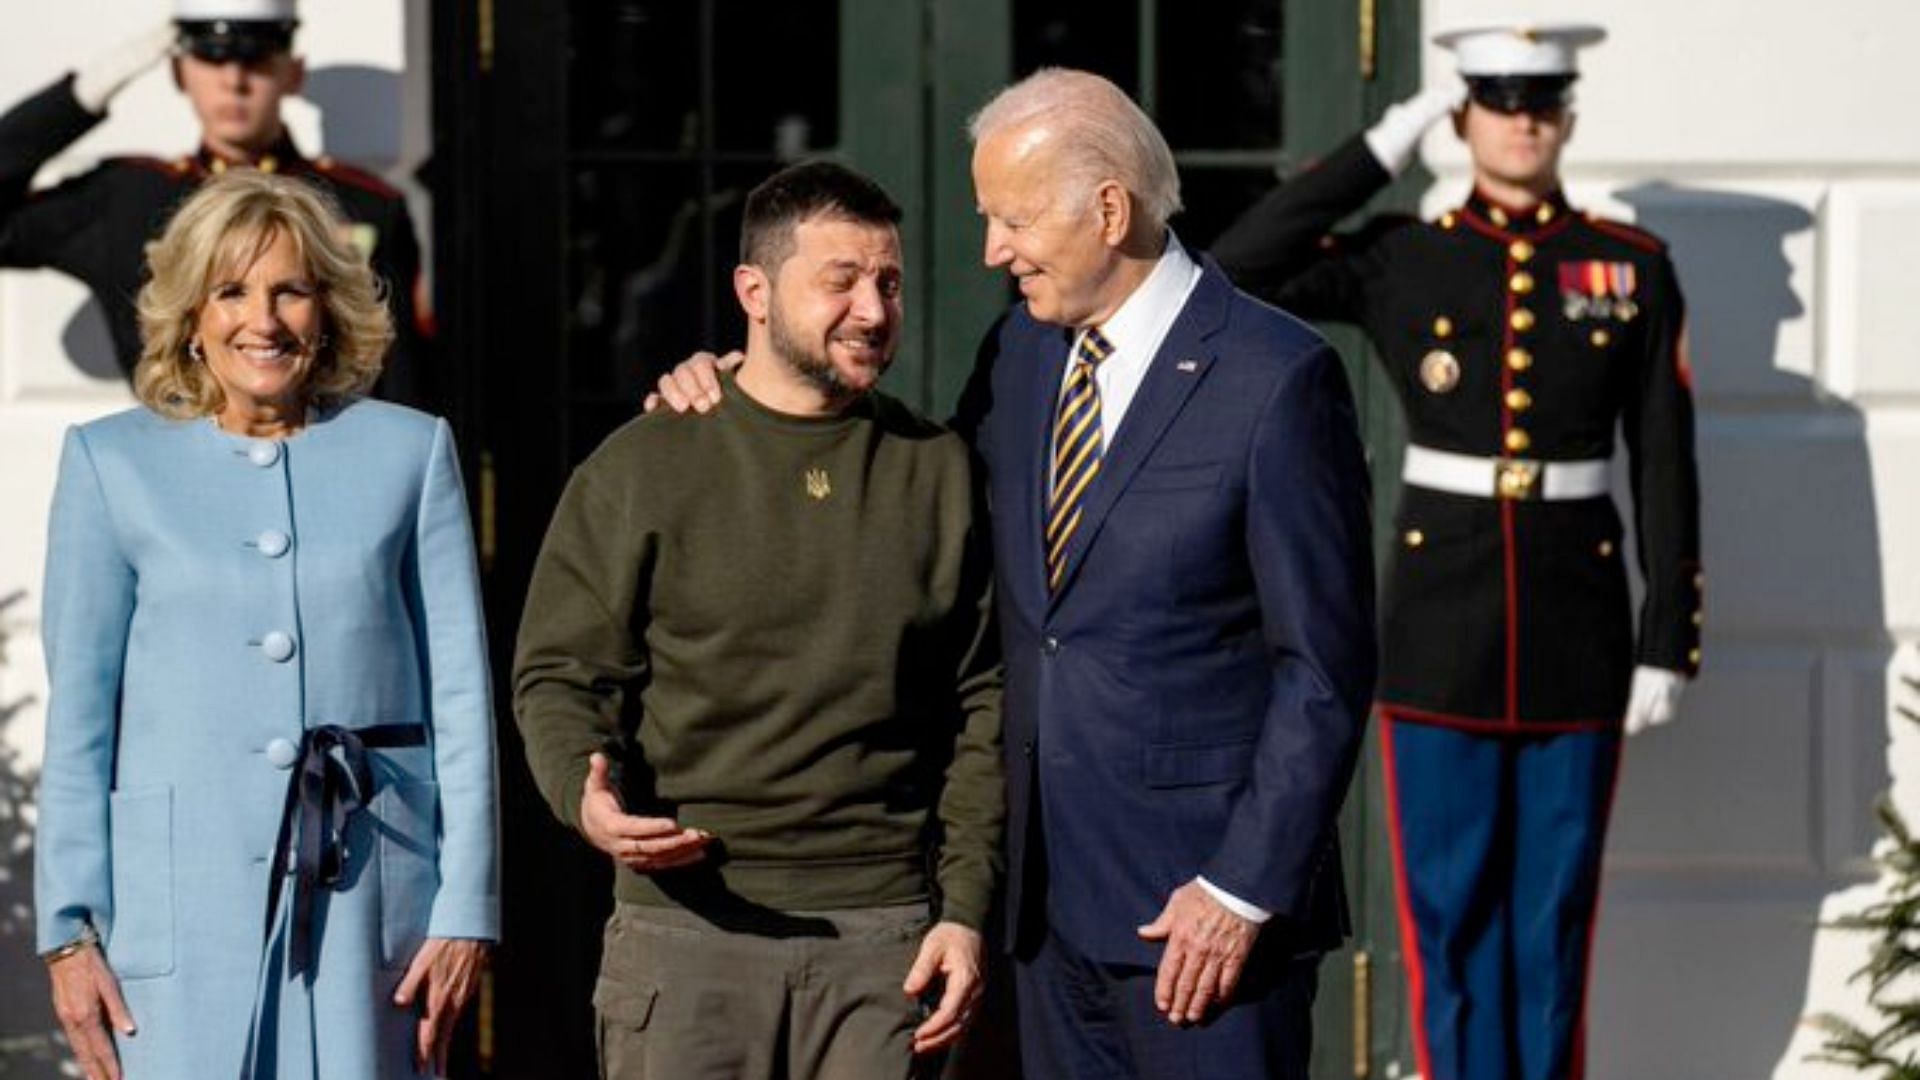 The Ukrainian President along with Biden (Image via Twitter/@lovesey)